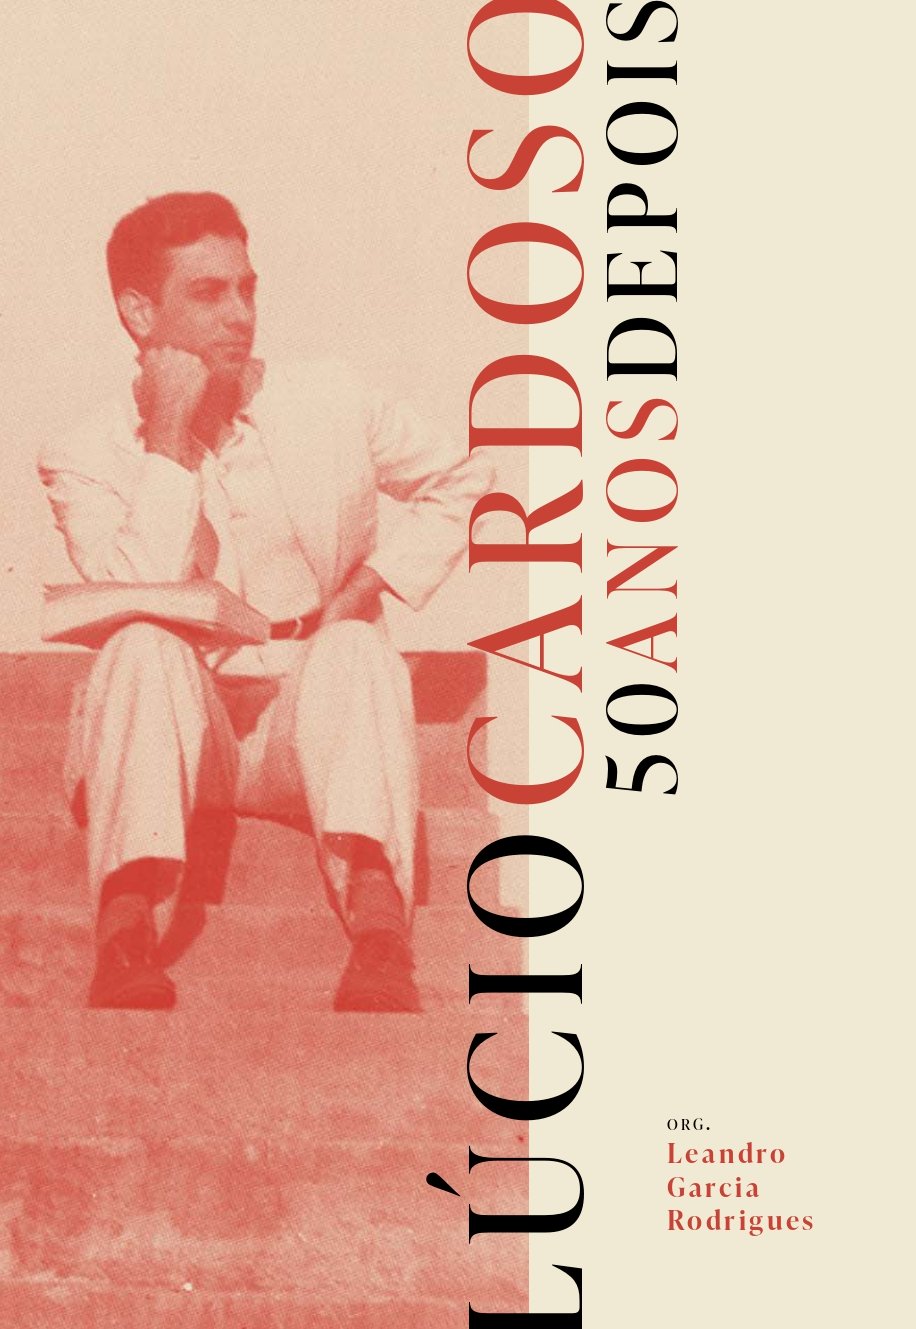 Lúcio Cardoso - 50 anos depois, livro de Leandro Garcia Rodrigues